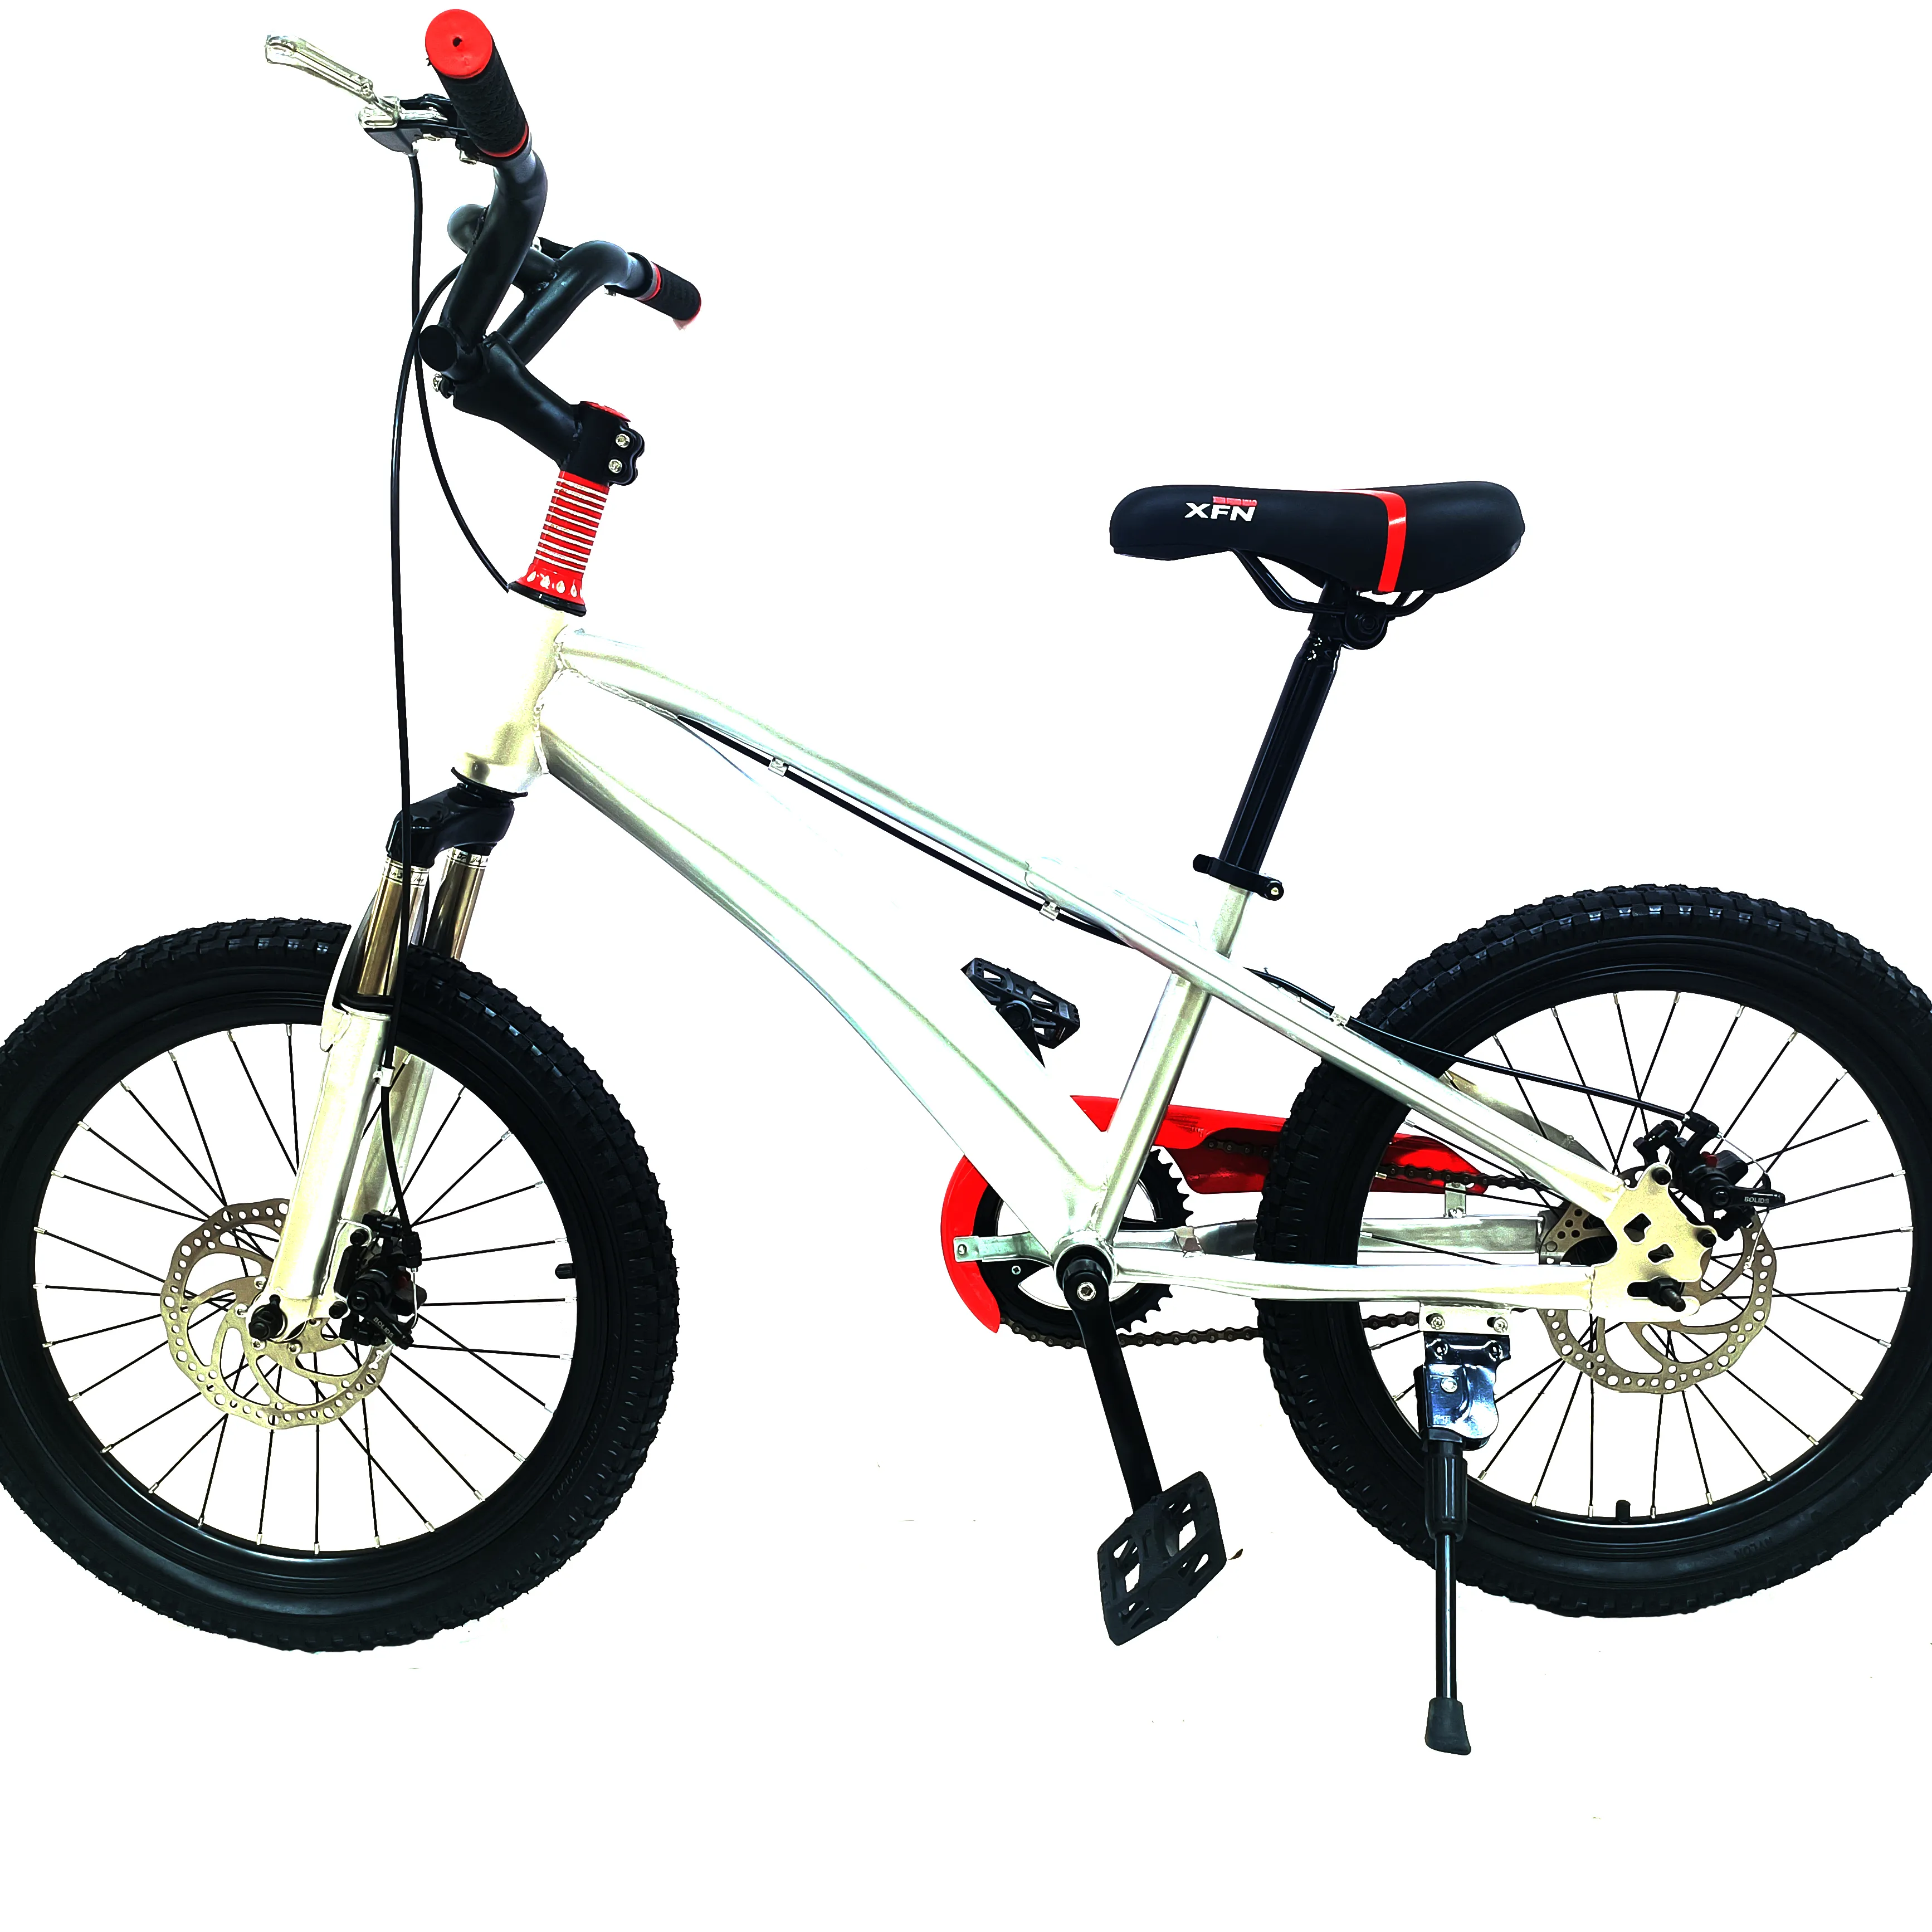 Çocuk için yüksek kalite yeni model dağ bisikletleri çocuk bisikletleri çocuk bisikleti ucuz fiyat döngüsü